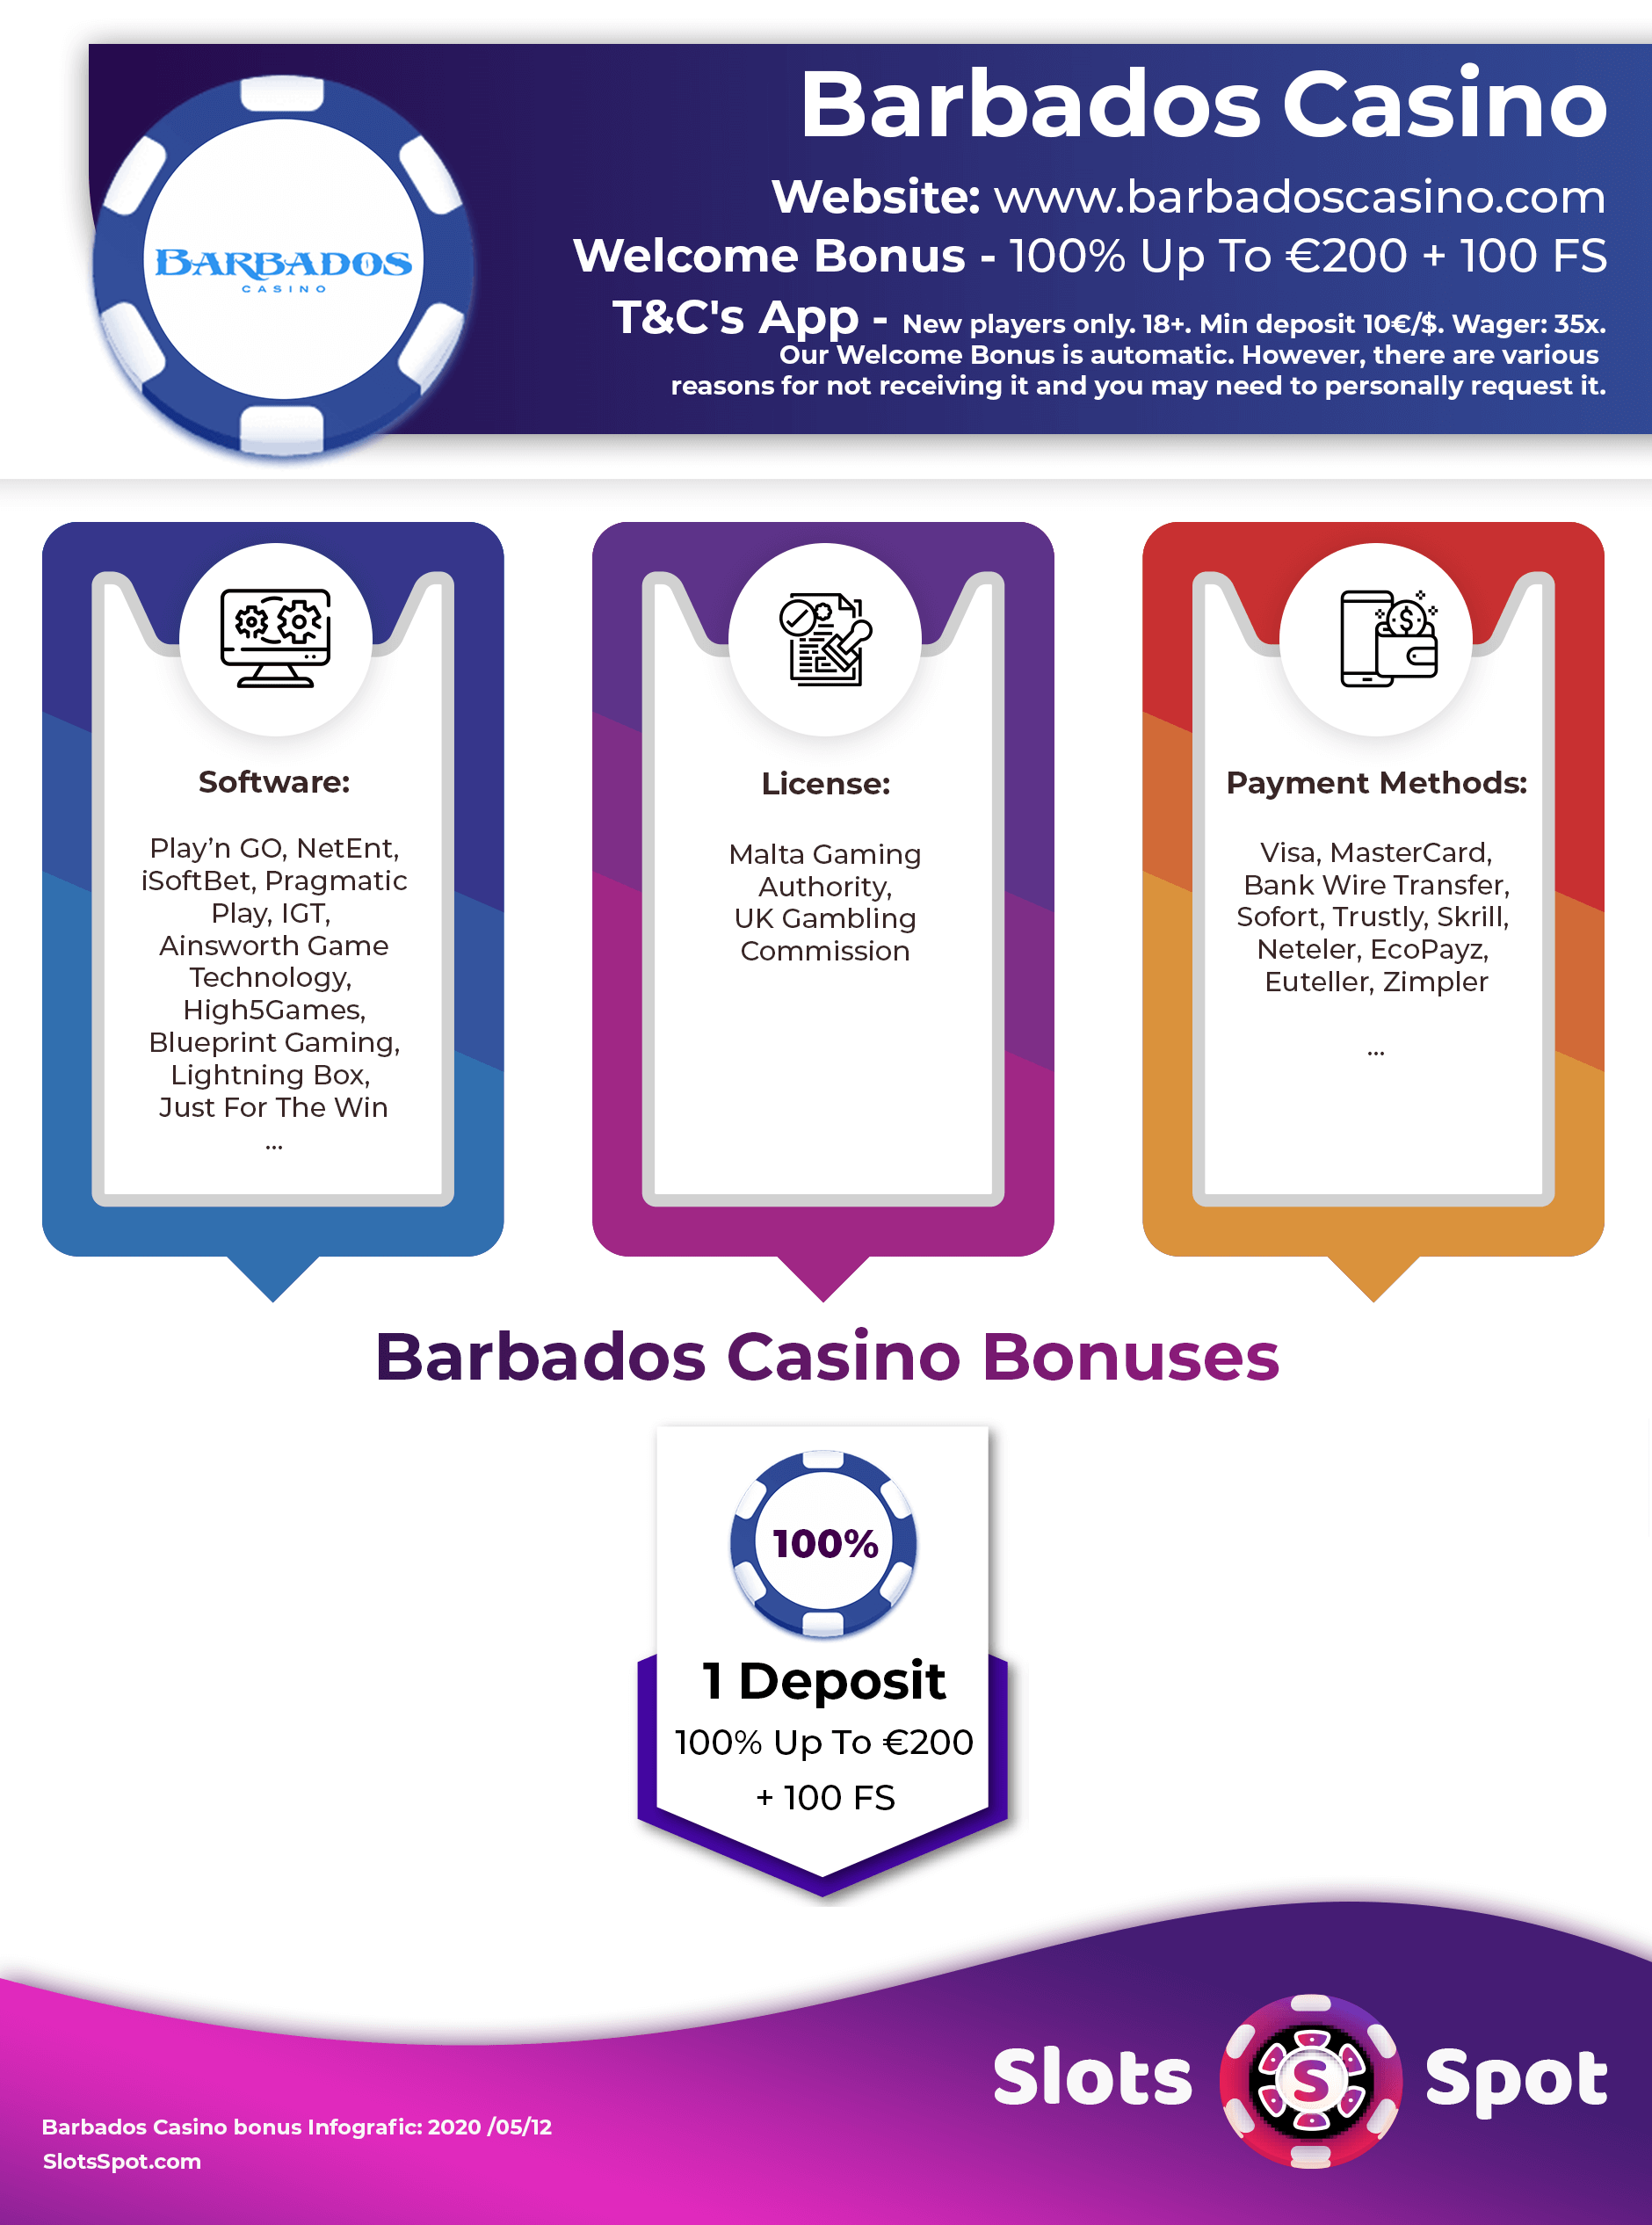 Aladdins casino bonus codes 2020